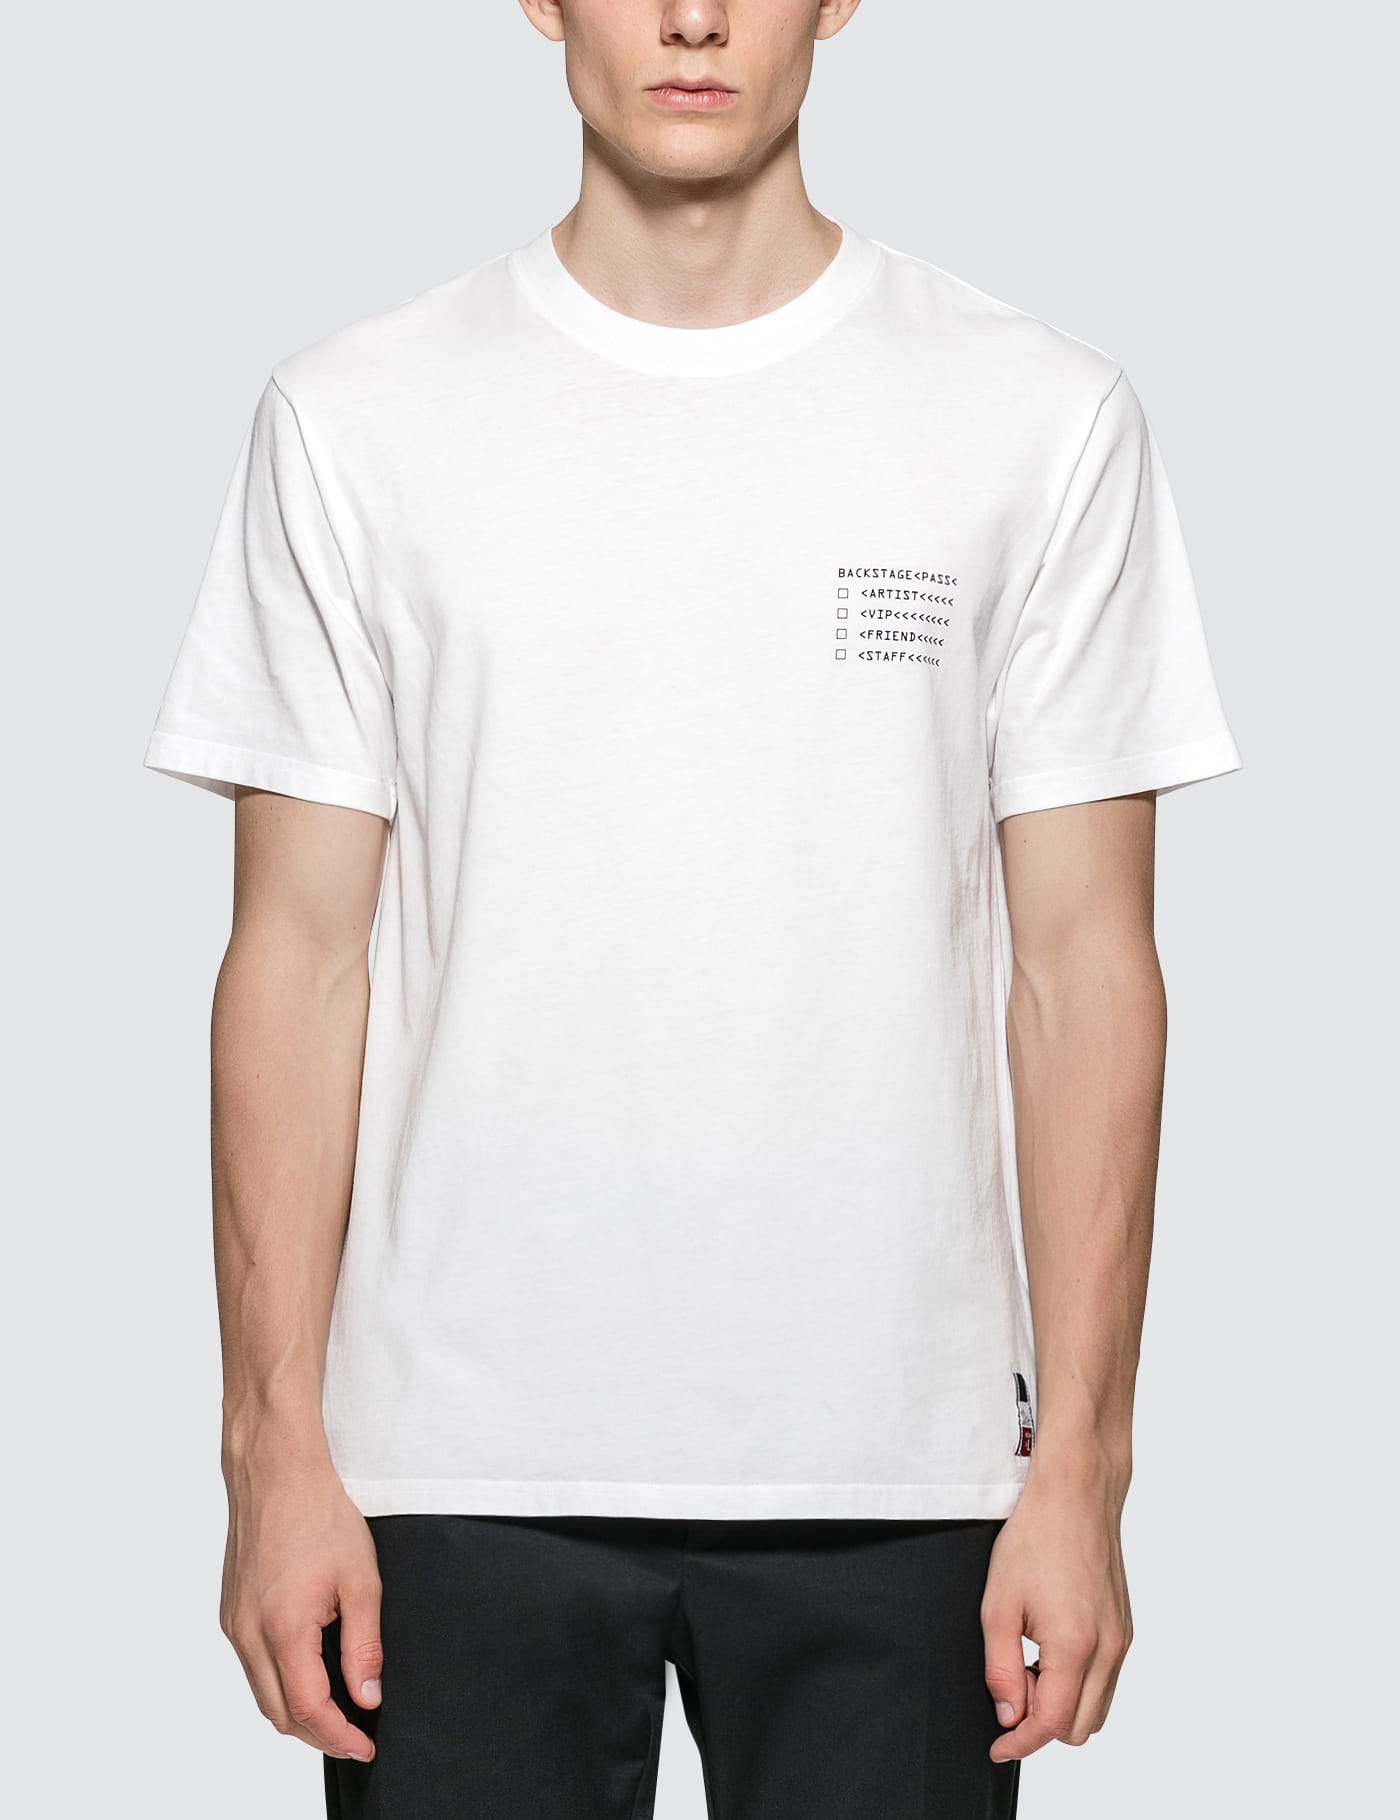 Moncler Genius - Moncler x Fragment Design Maglia S/S T-Shirt ...